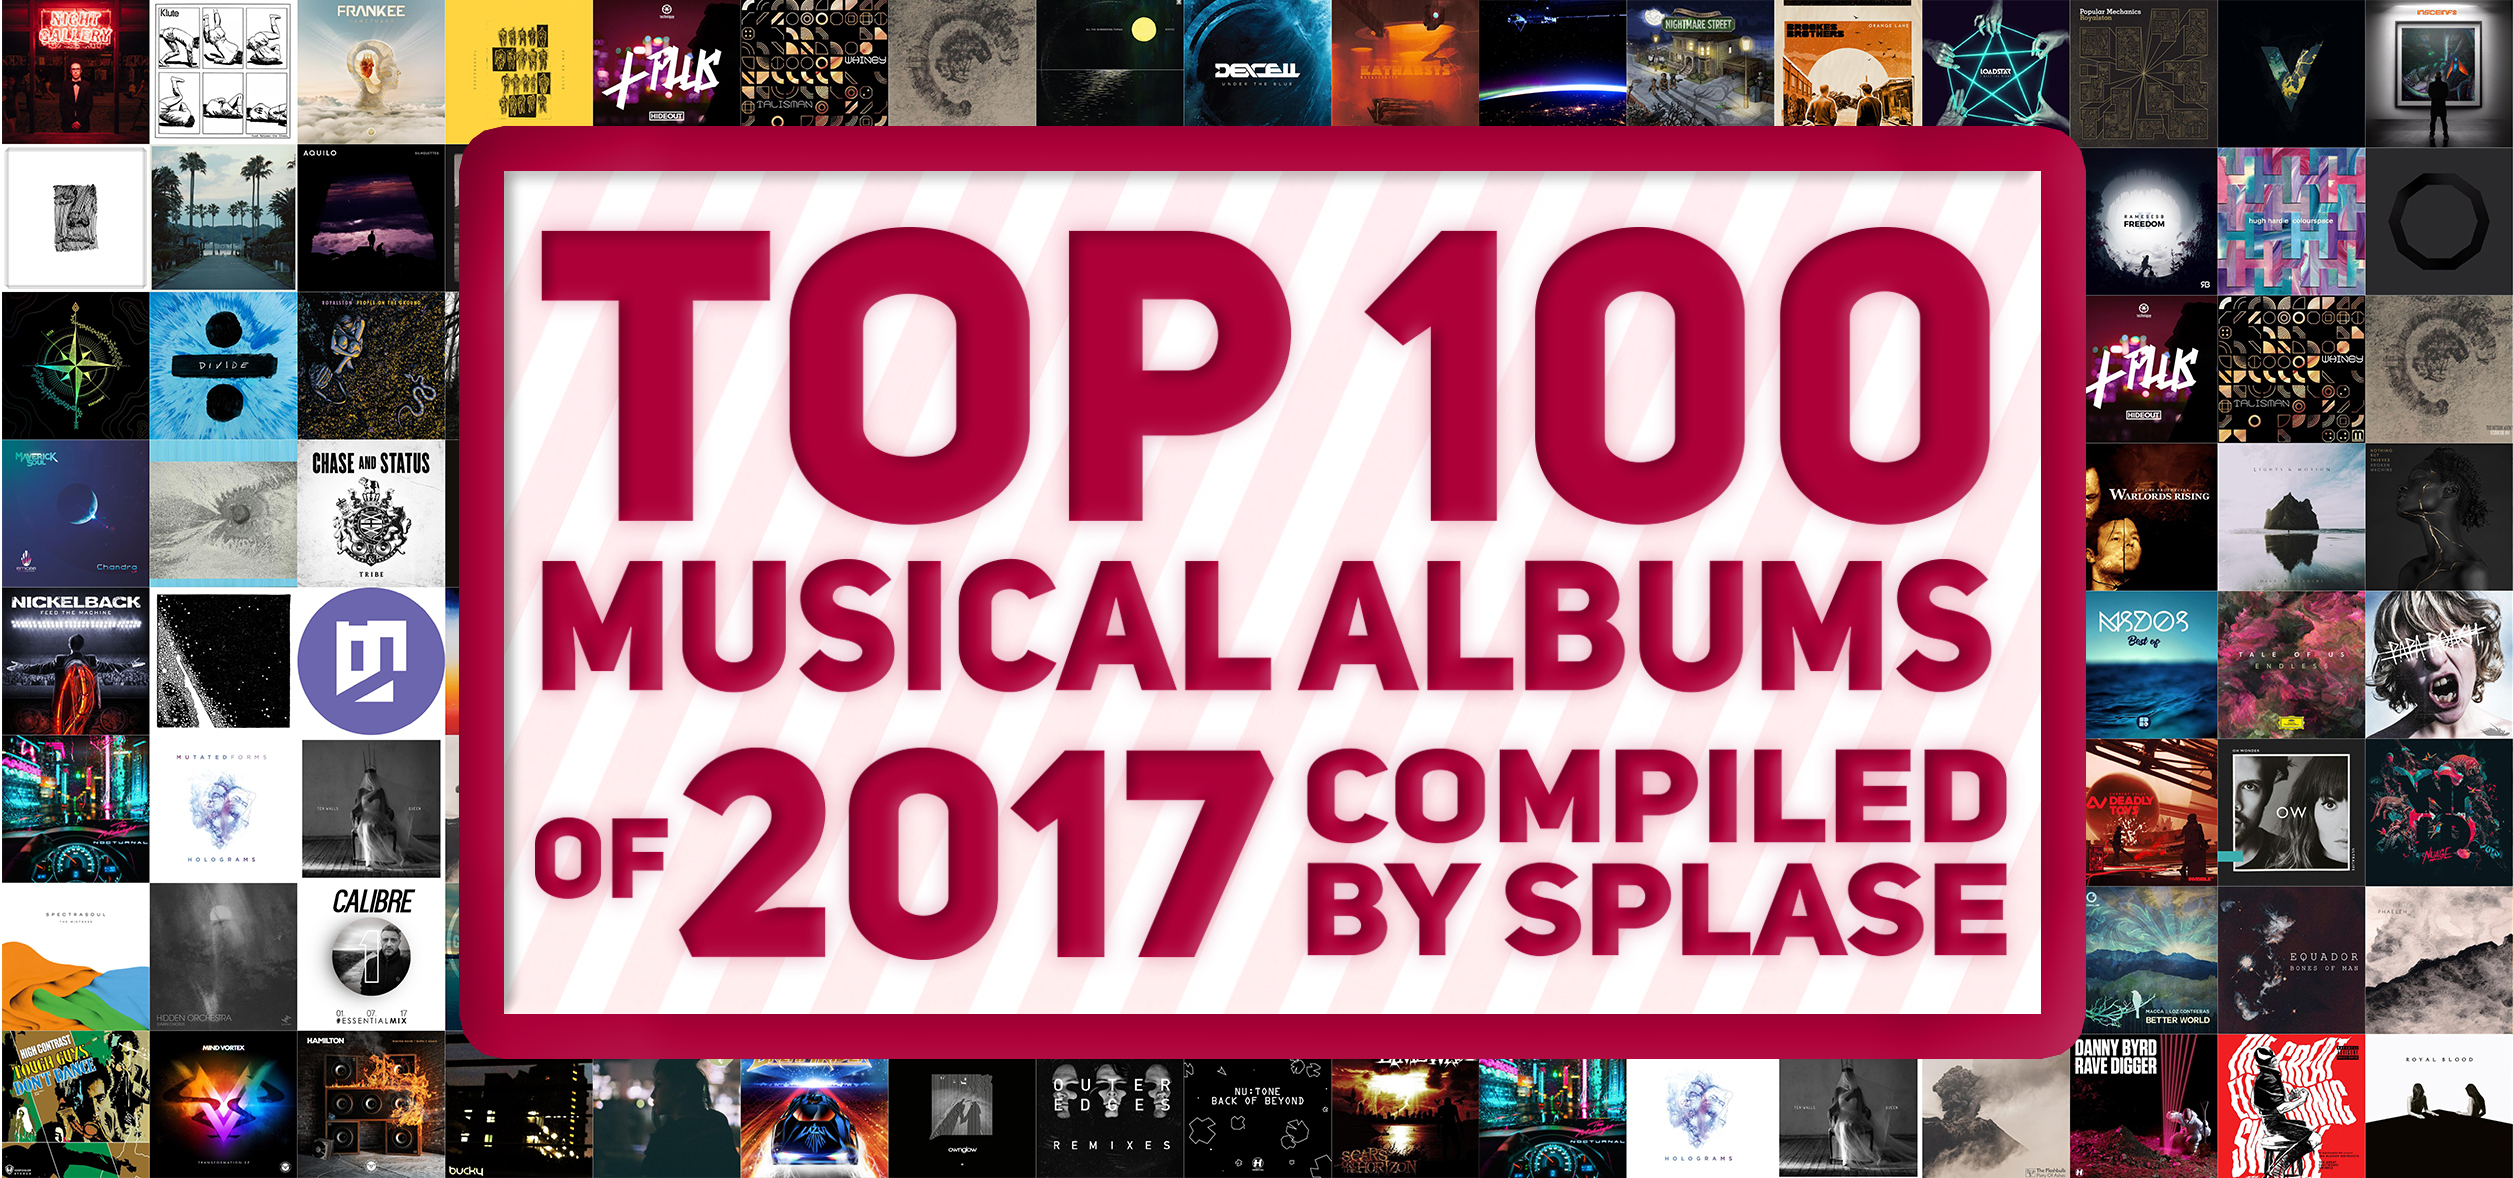 ОП 100 Музыкальных Альбомов 2017 года по моей версии / TOP 100 Musical Albums of 2017 compiled by Splase